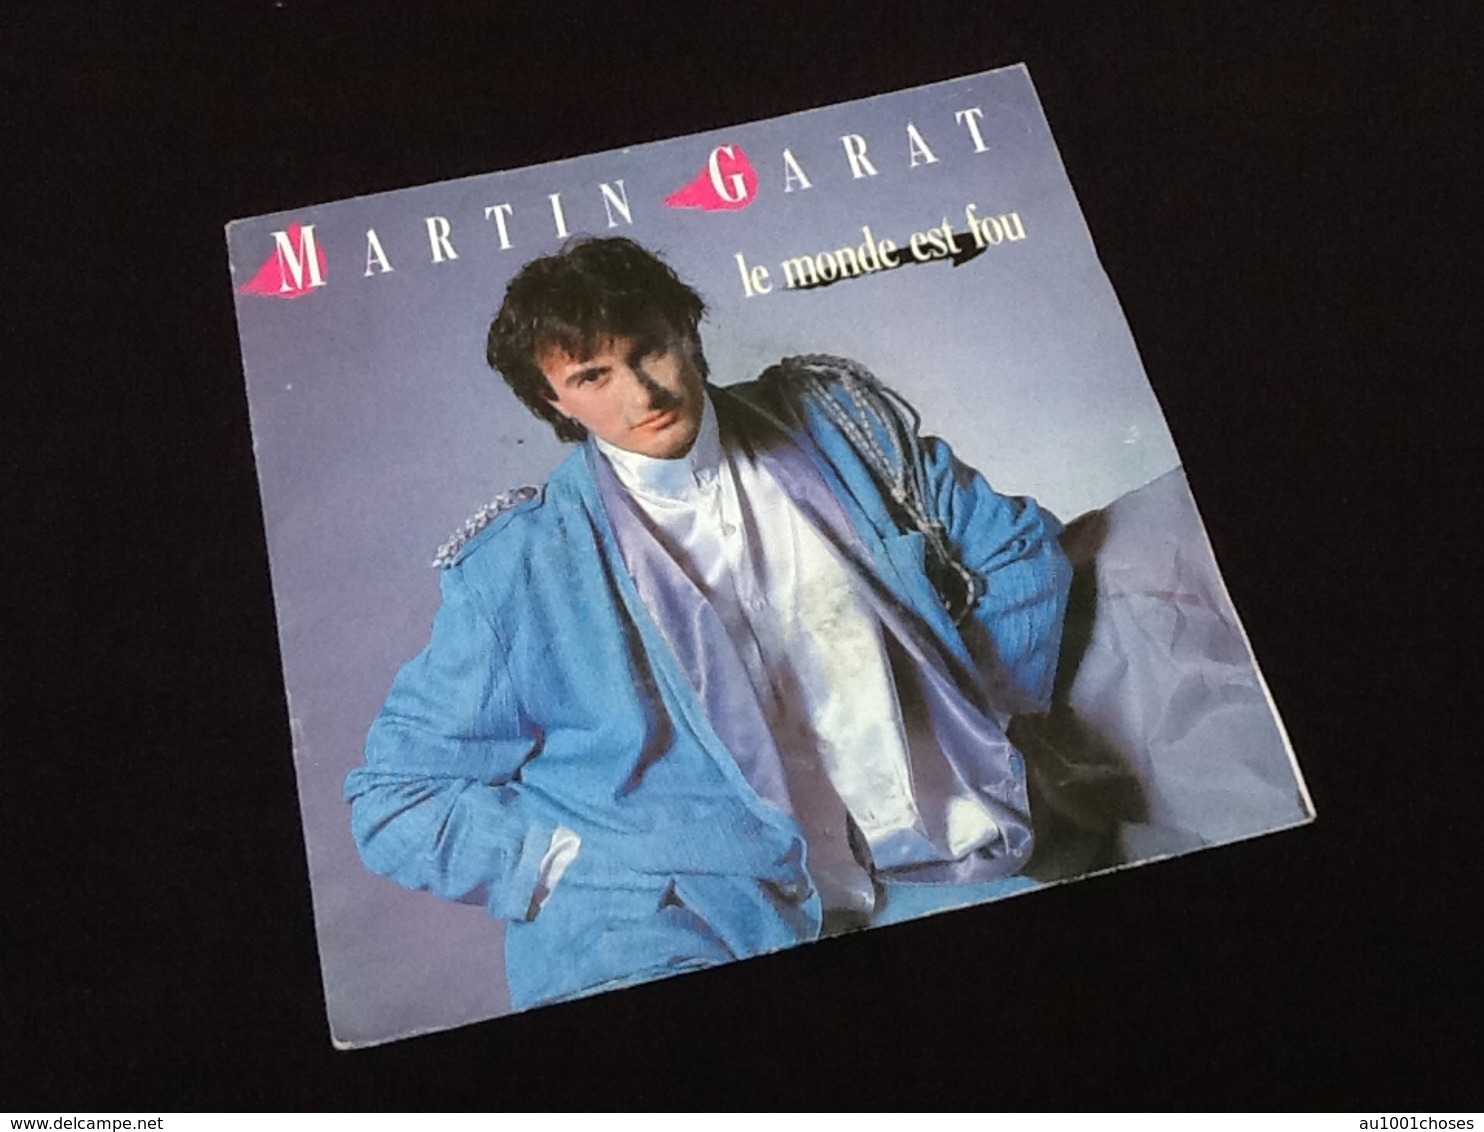 Vinyle 45 Tours Martin Garat Le Monde Est Fou (1985) - Musique De Films